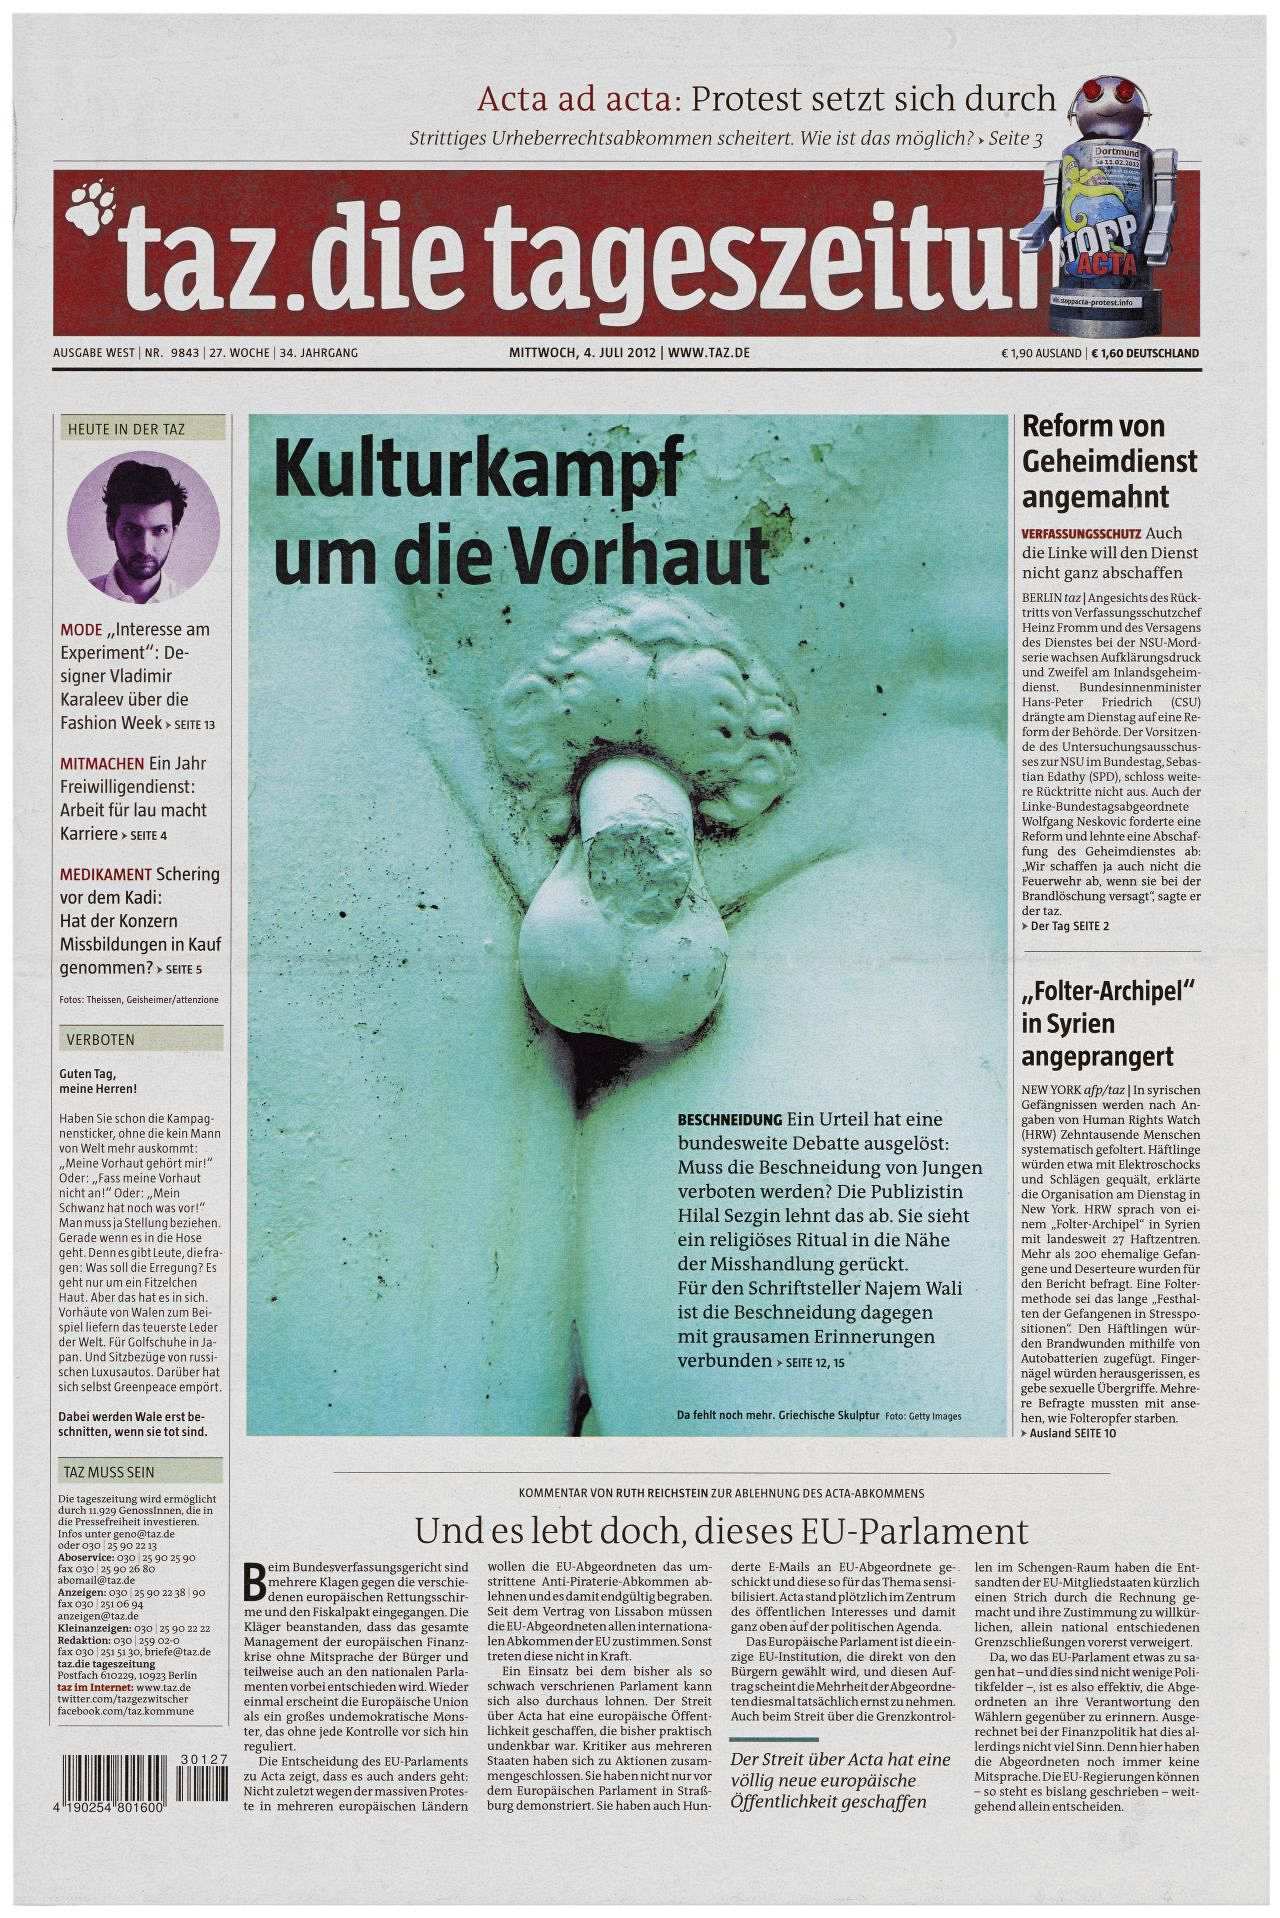 Hauptschlagzeile auf der Titelseite: Kulturkampf um die Vorhaut. Großes mintgrünes Detailfoto von Bauch und Oberschenkel einer nackten männlichen Skulptur. Der größte Teil des Penis ist abgebrochen.